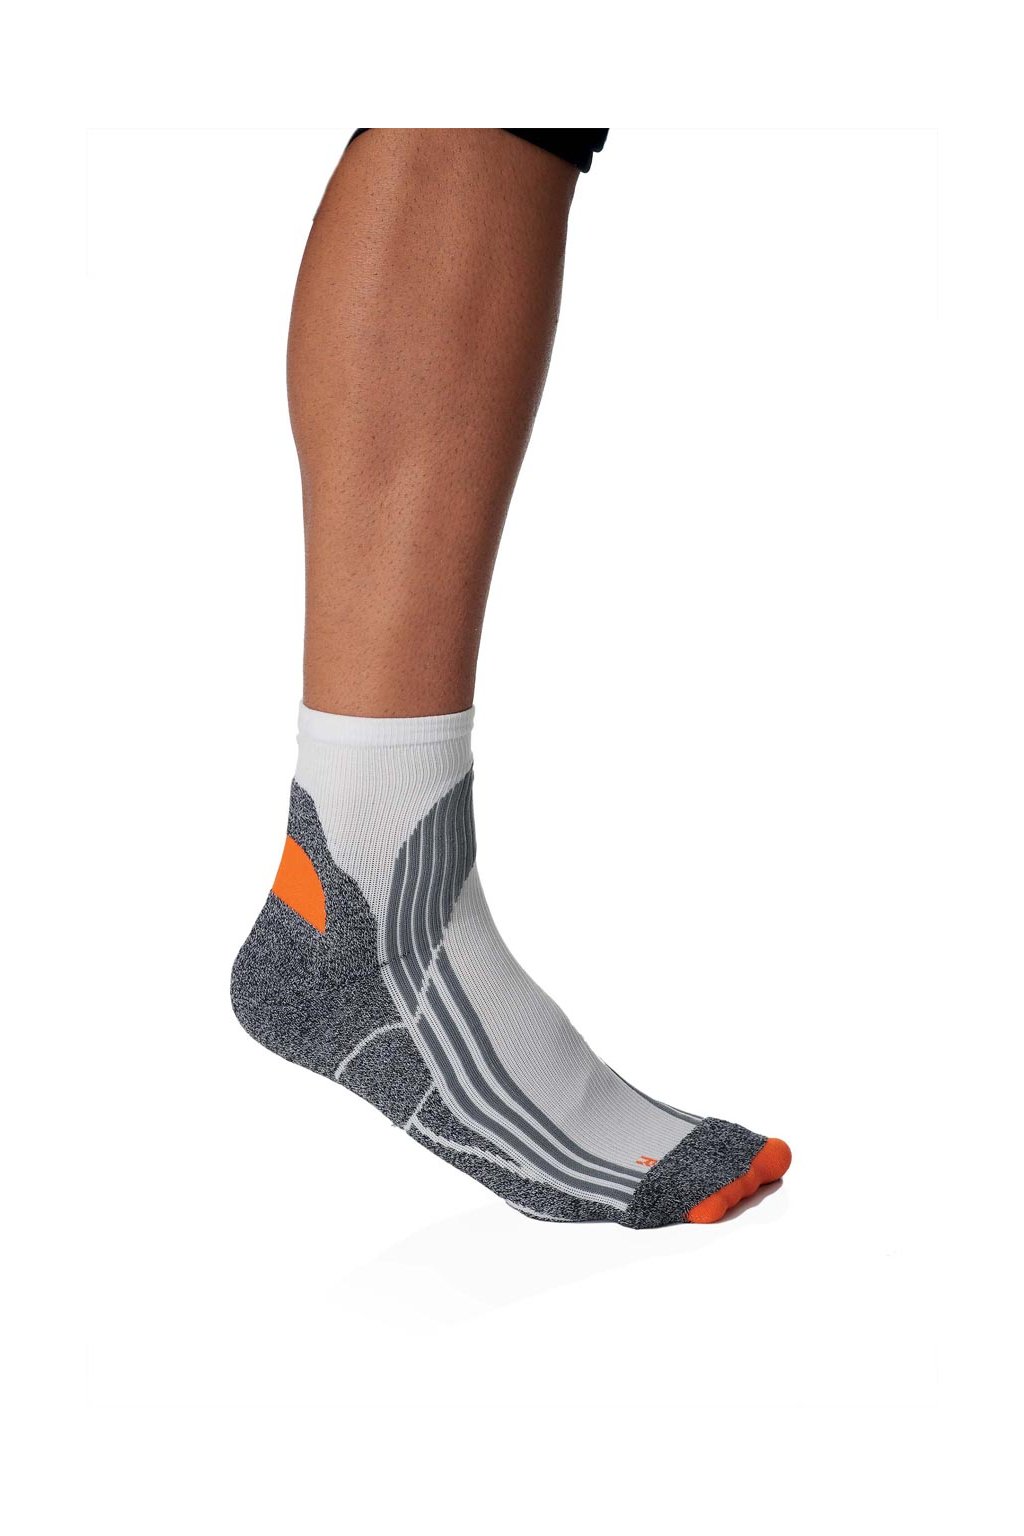 Unisex sportovní ponožky TECHNICAL